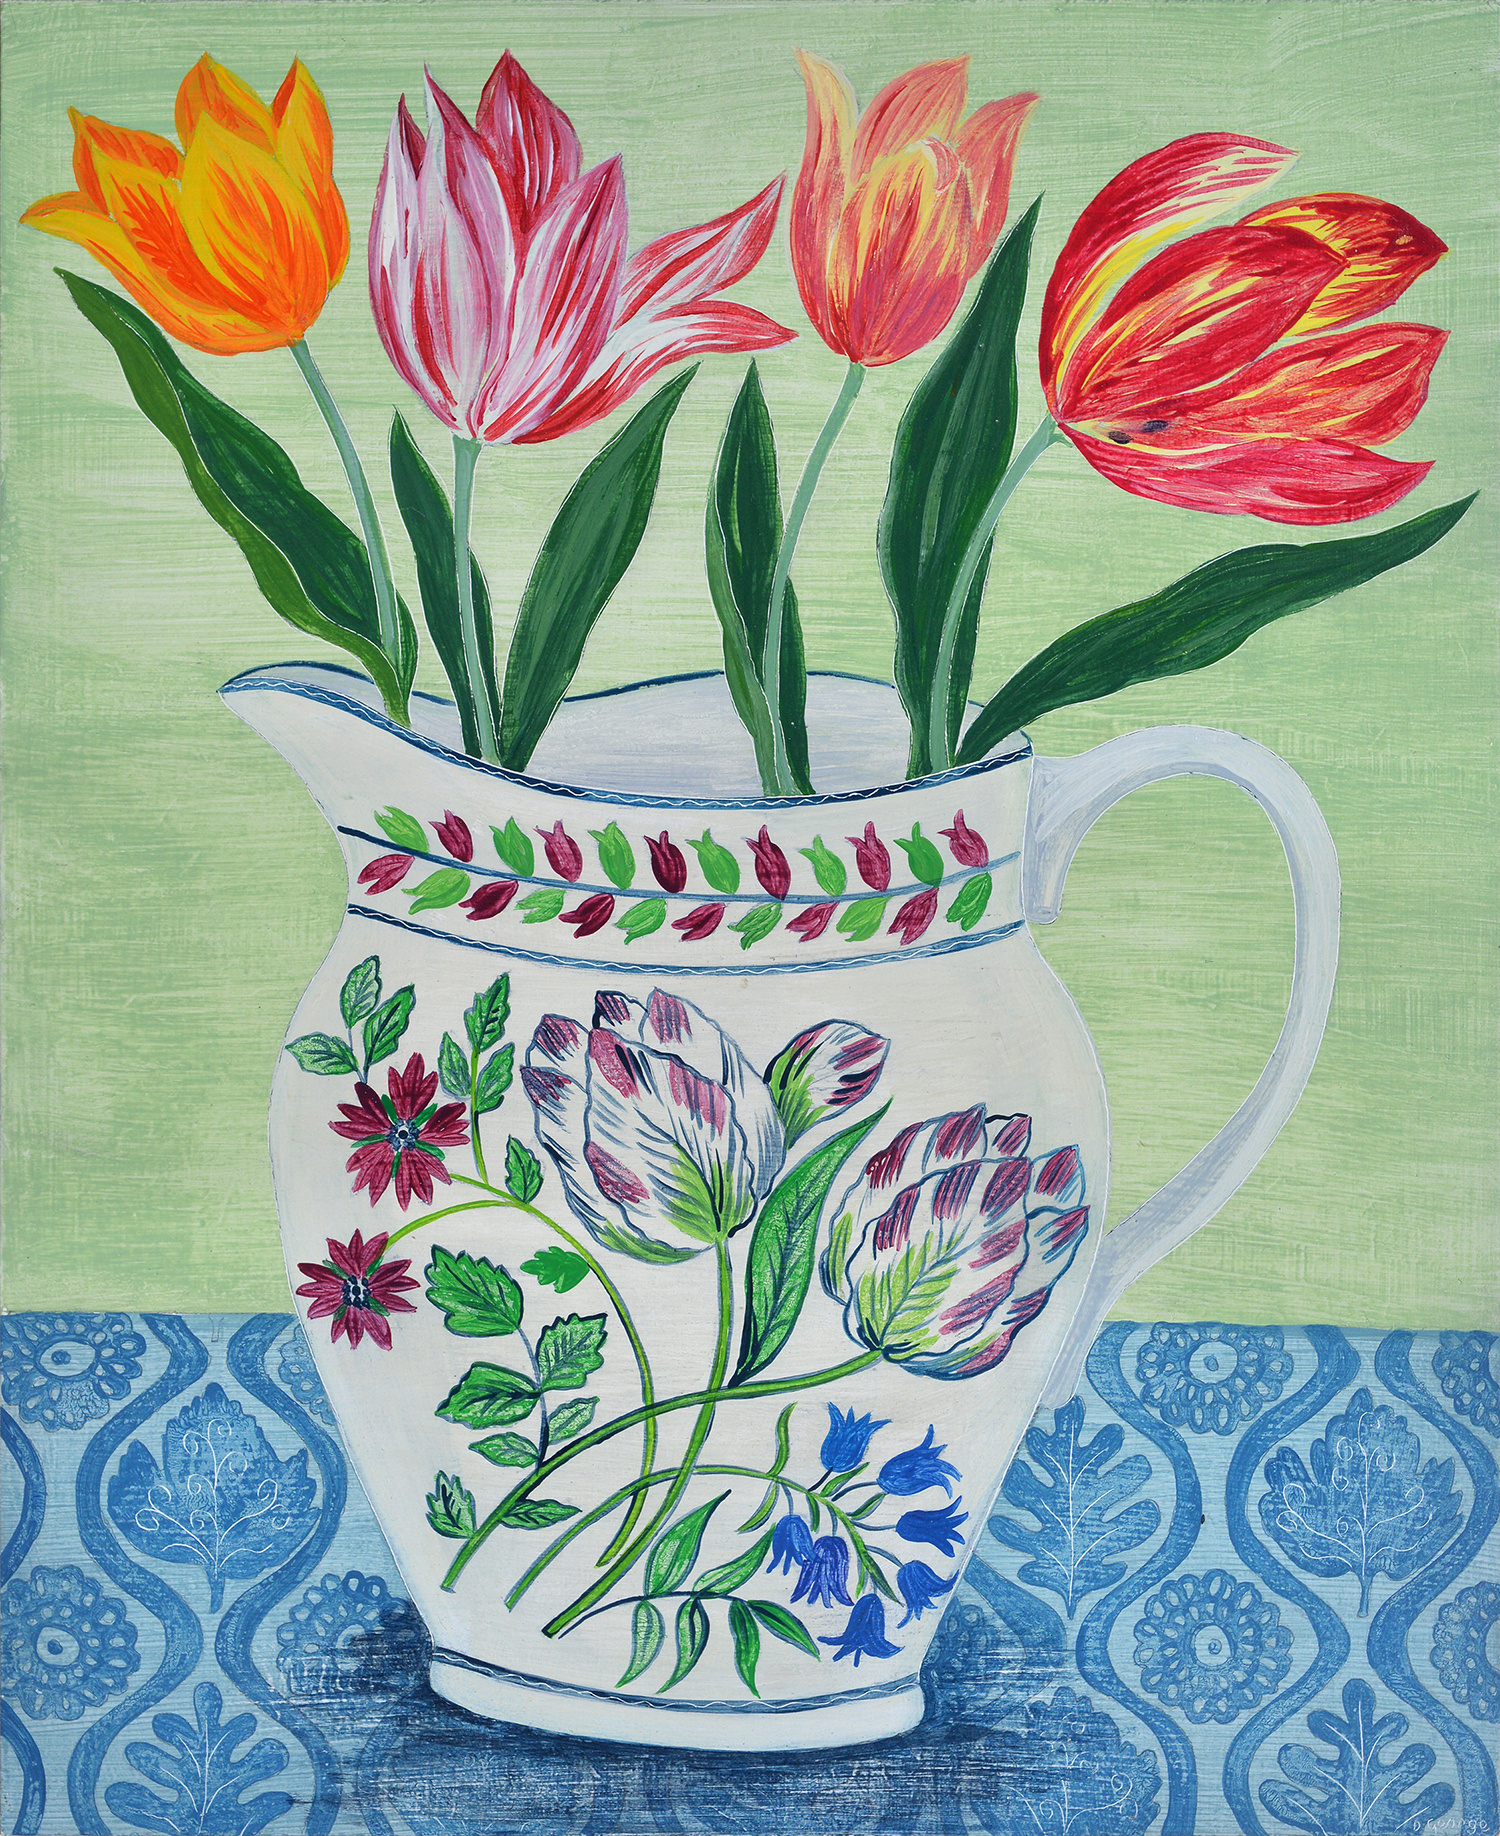 Tulip Jug by Debbie George